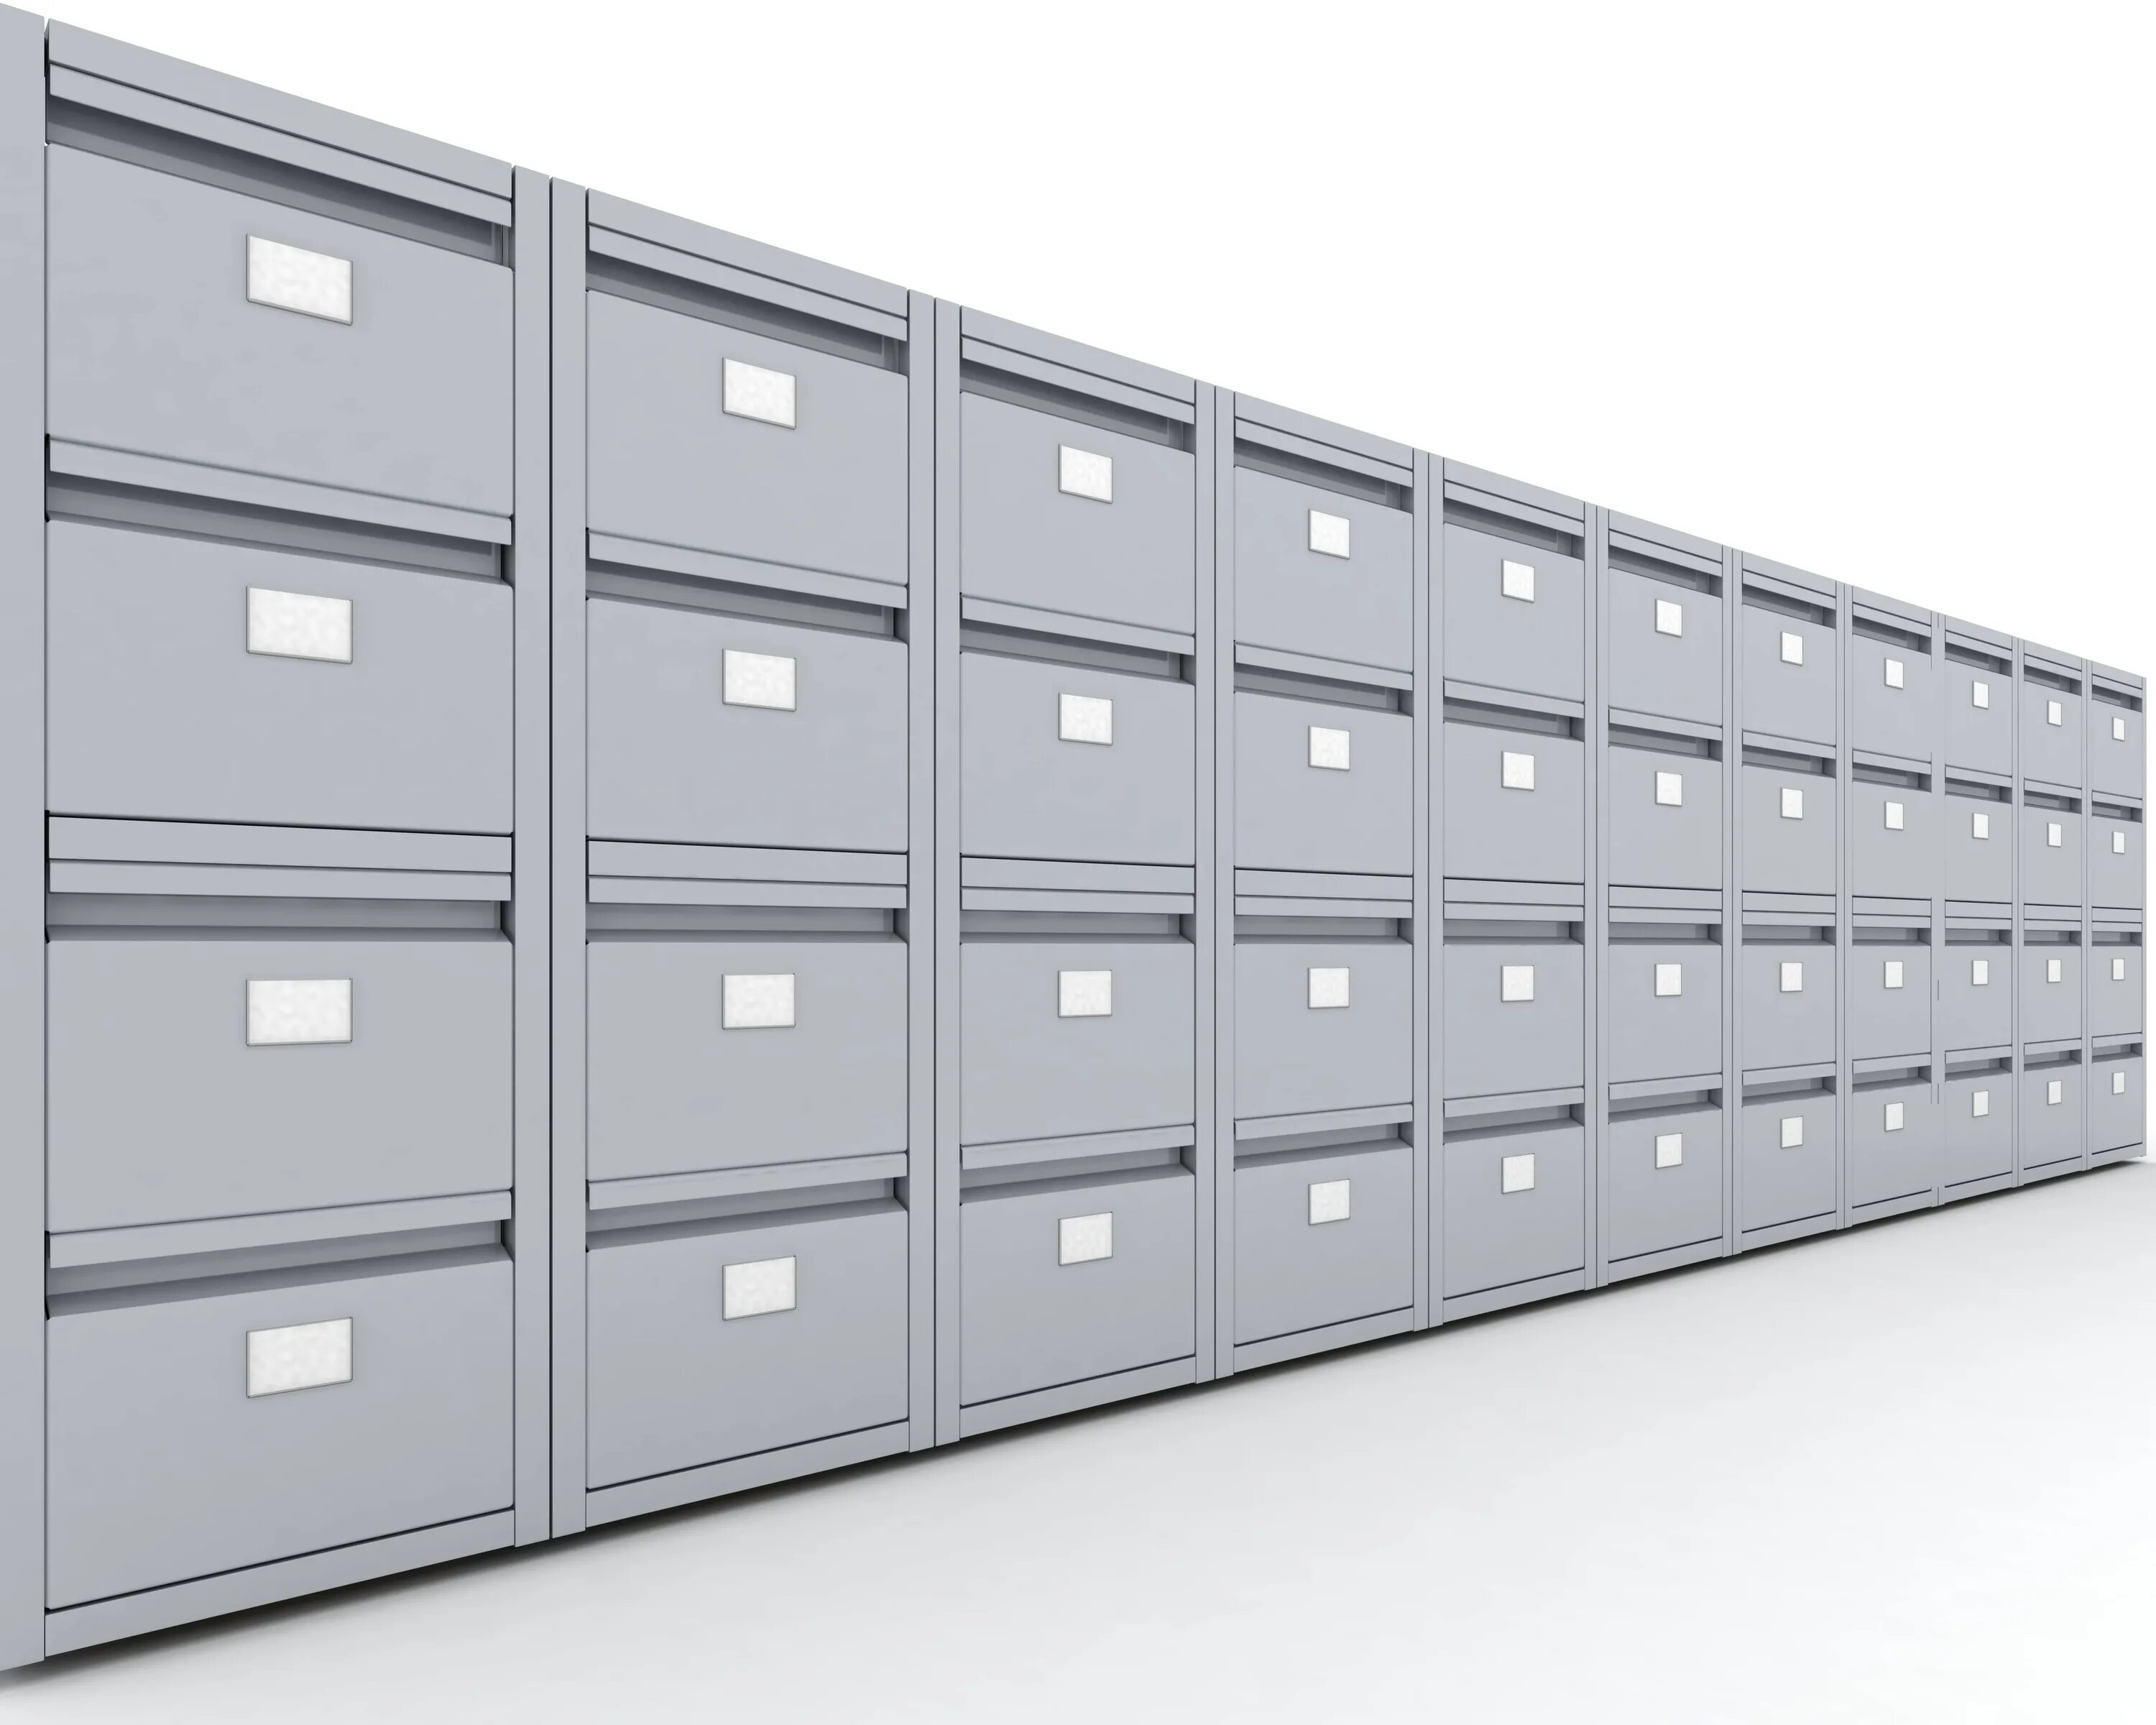 Удаленное хранение документов. Шкаф для хранения документации. Картотека для хранения архива. Шкаф картотечный 18 ячеек. Ящики для архива документов большие.